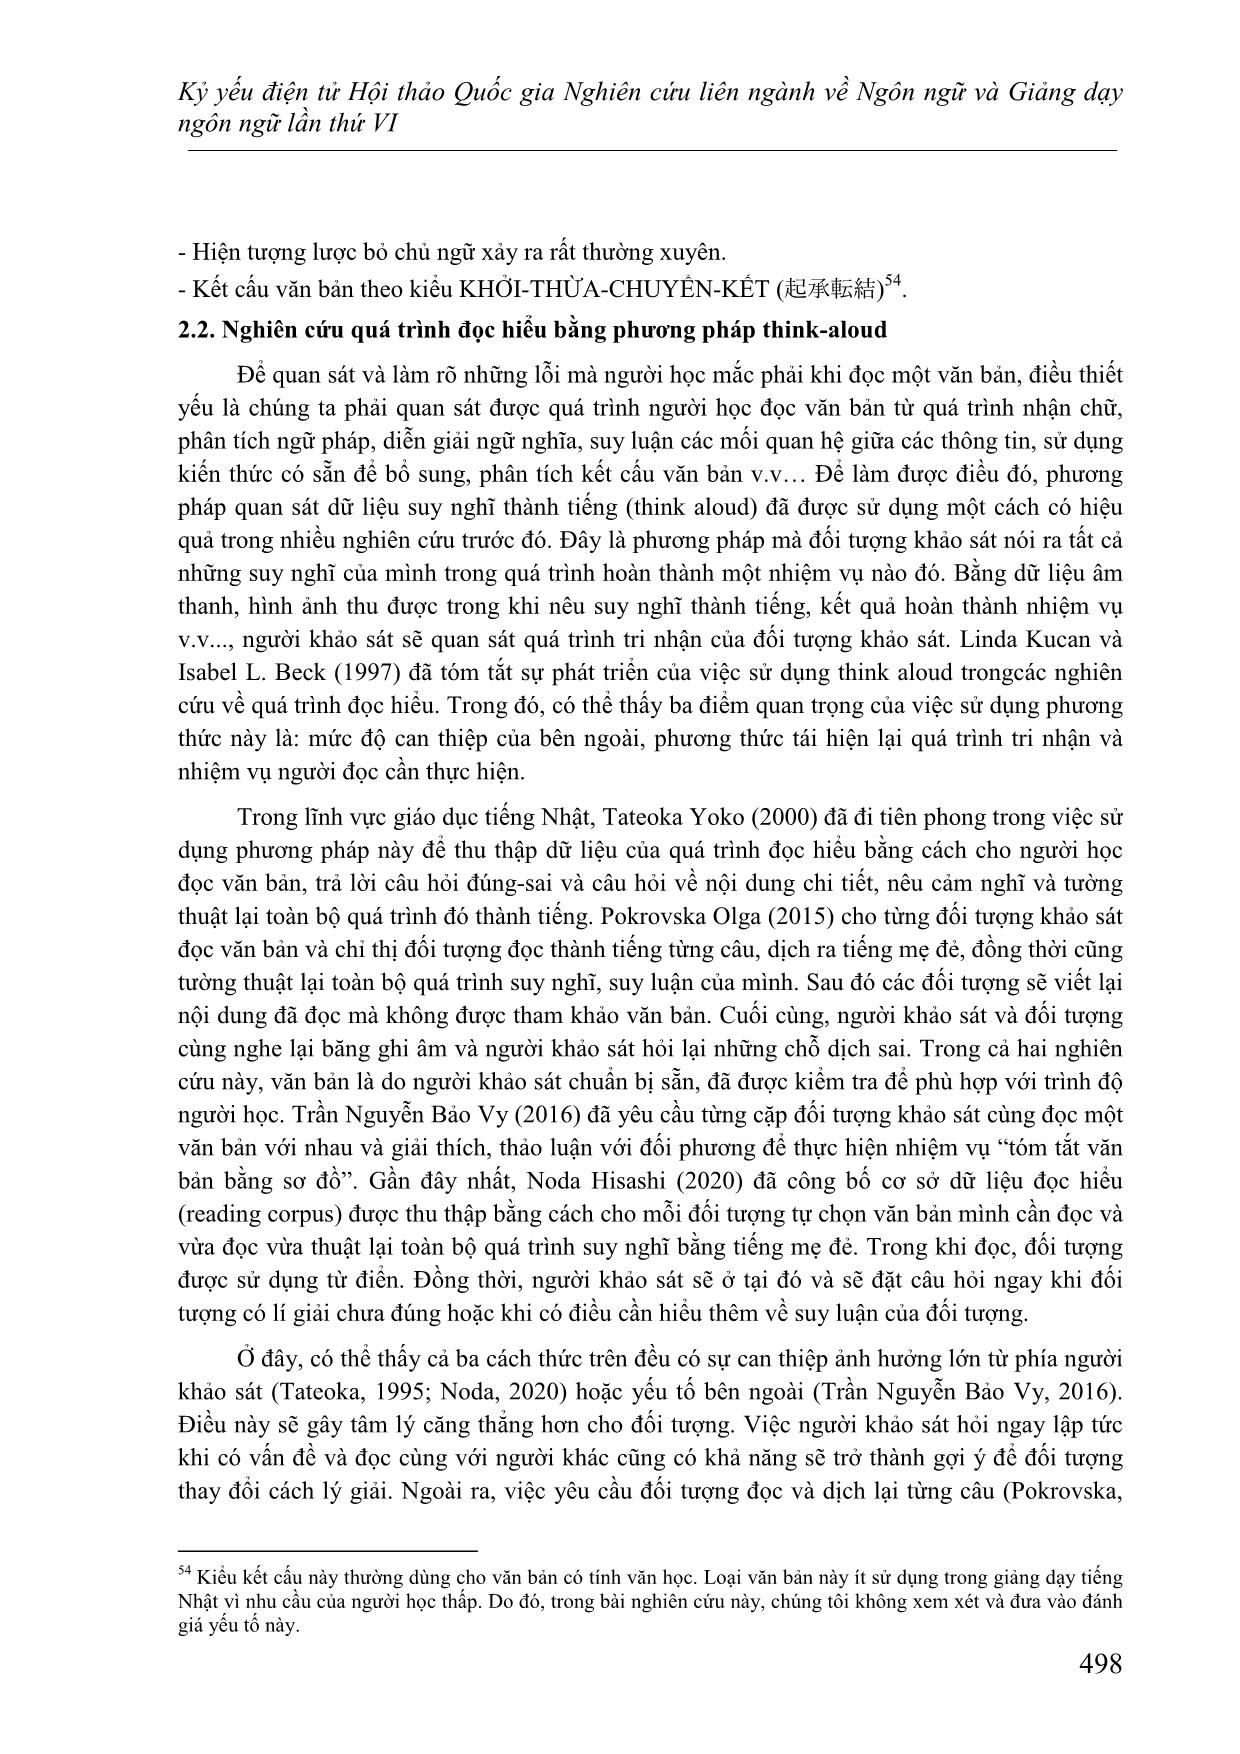 Nghiên cứu các lỗi thường gặp của người học Việt Nam ở trình độ cao cấp khi đọc hiểu văn bản tiếng Nhật trang 3